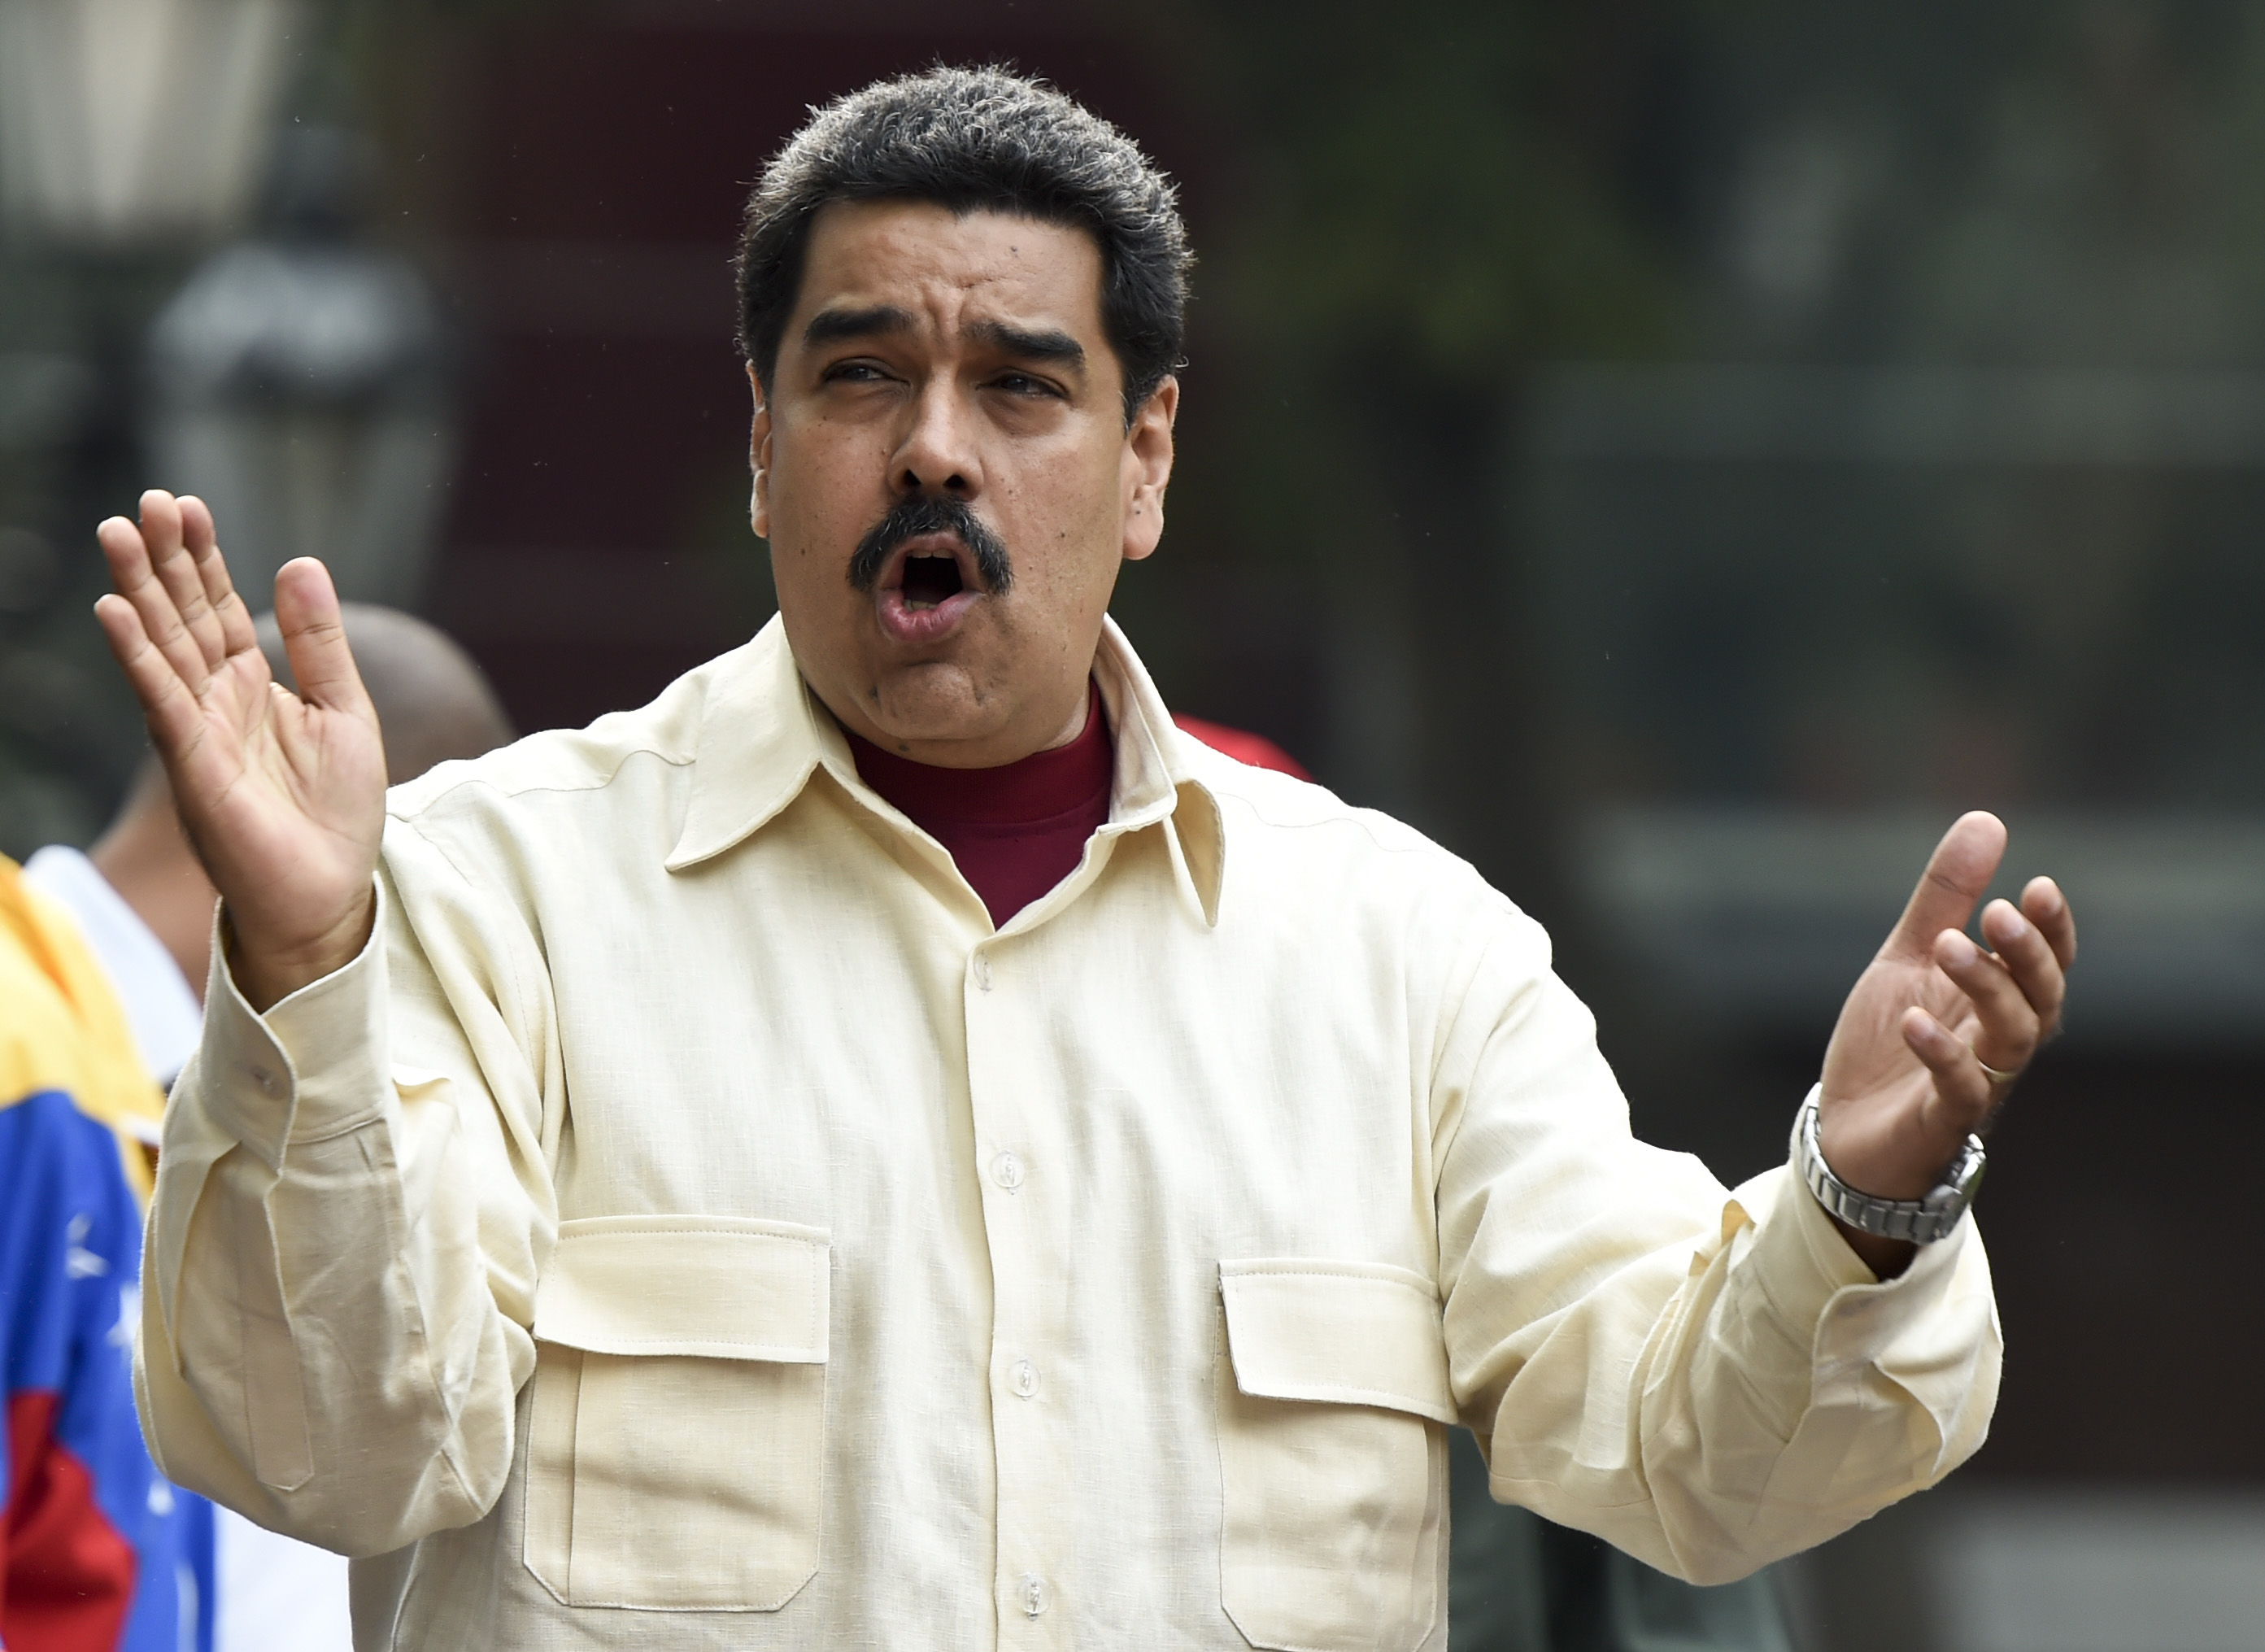 El martes se sabrá si se activa el Referendo Revocatorio contra Maduro